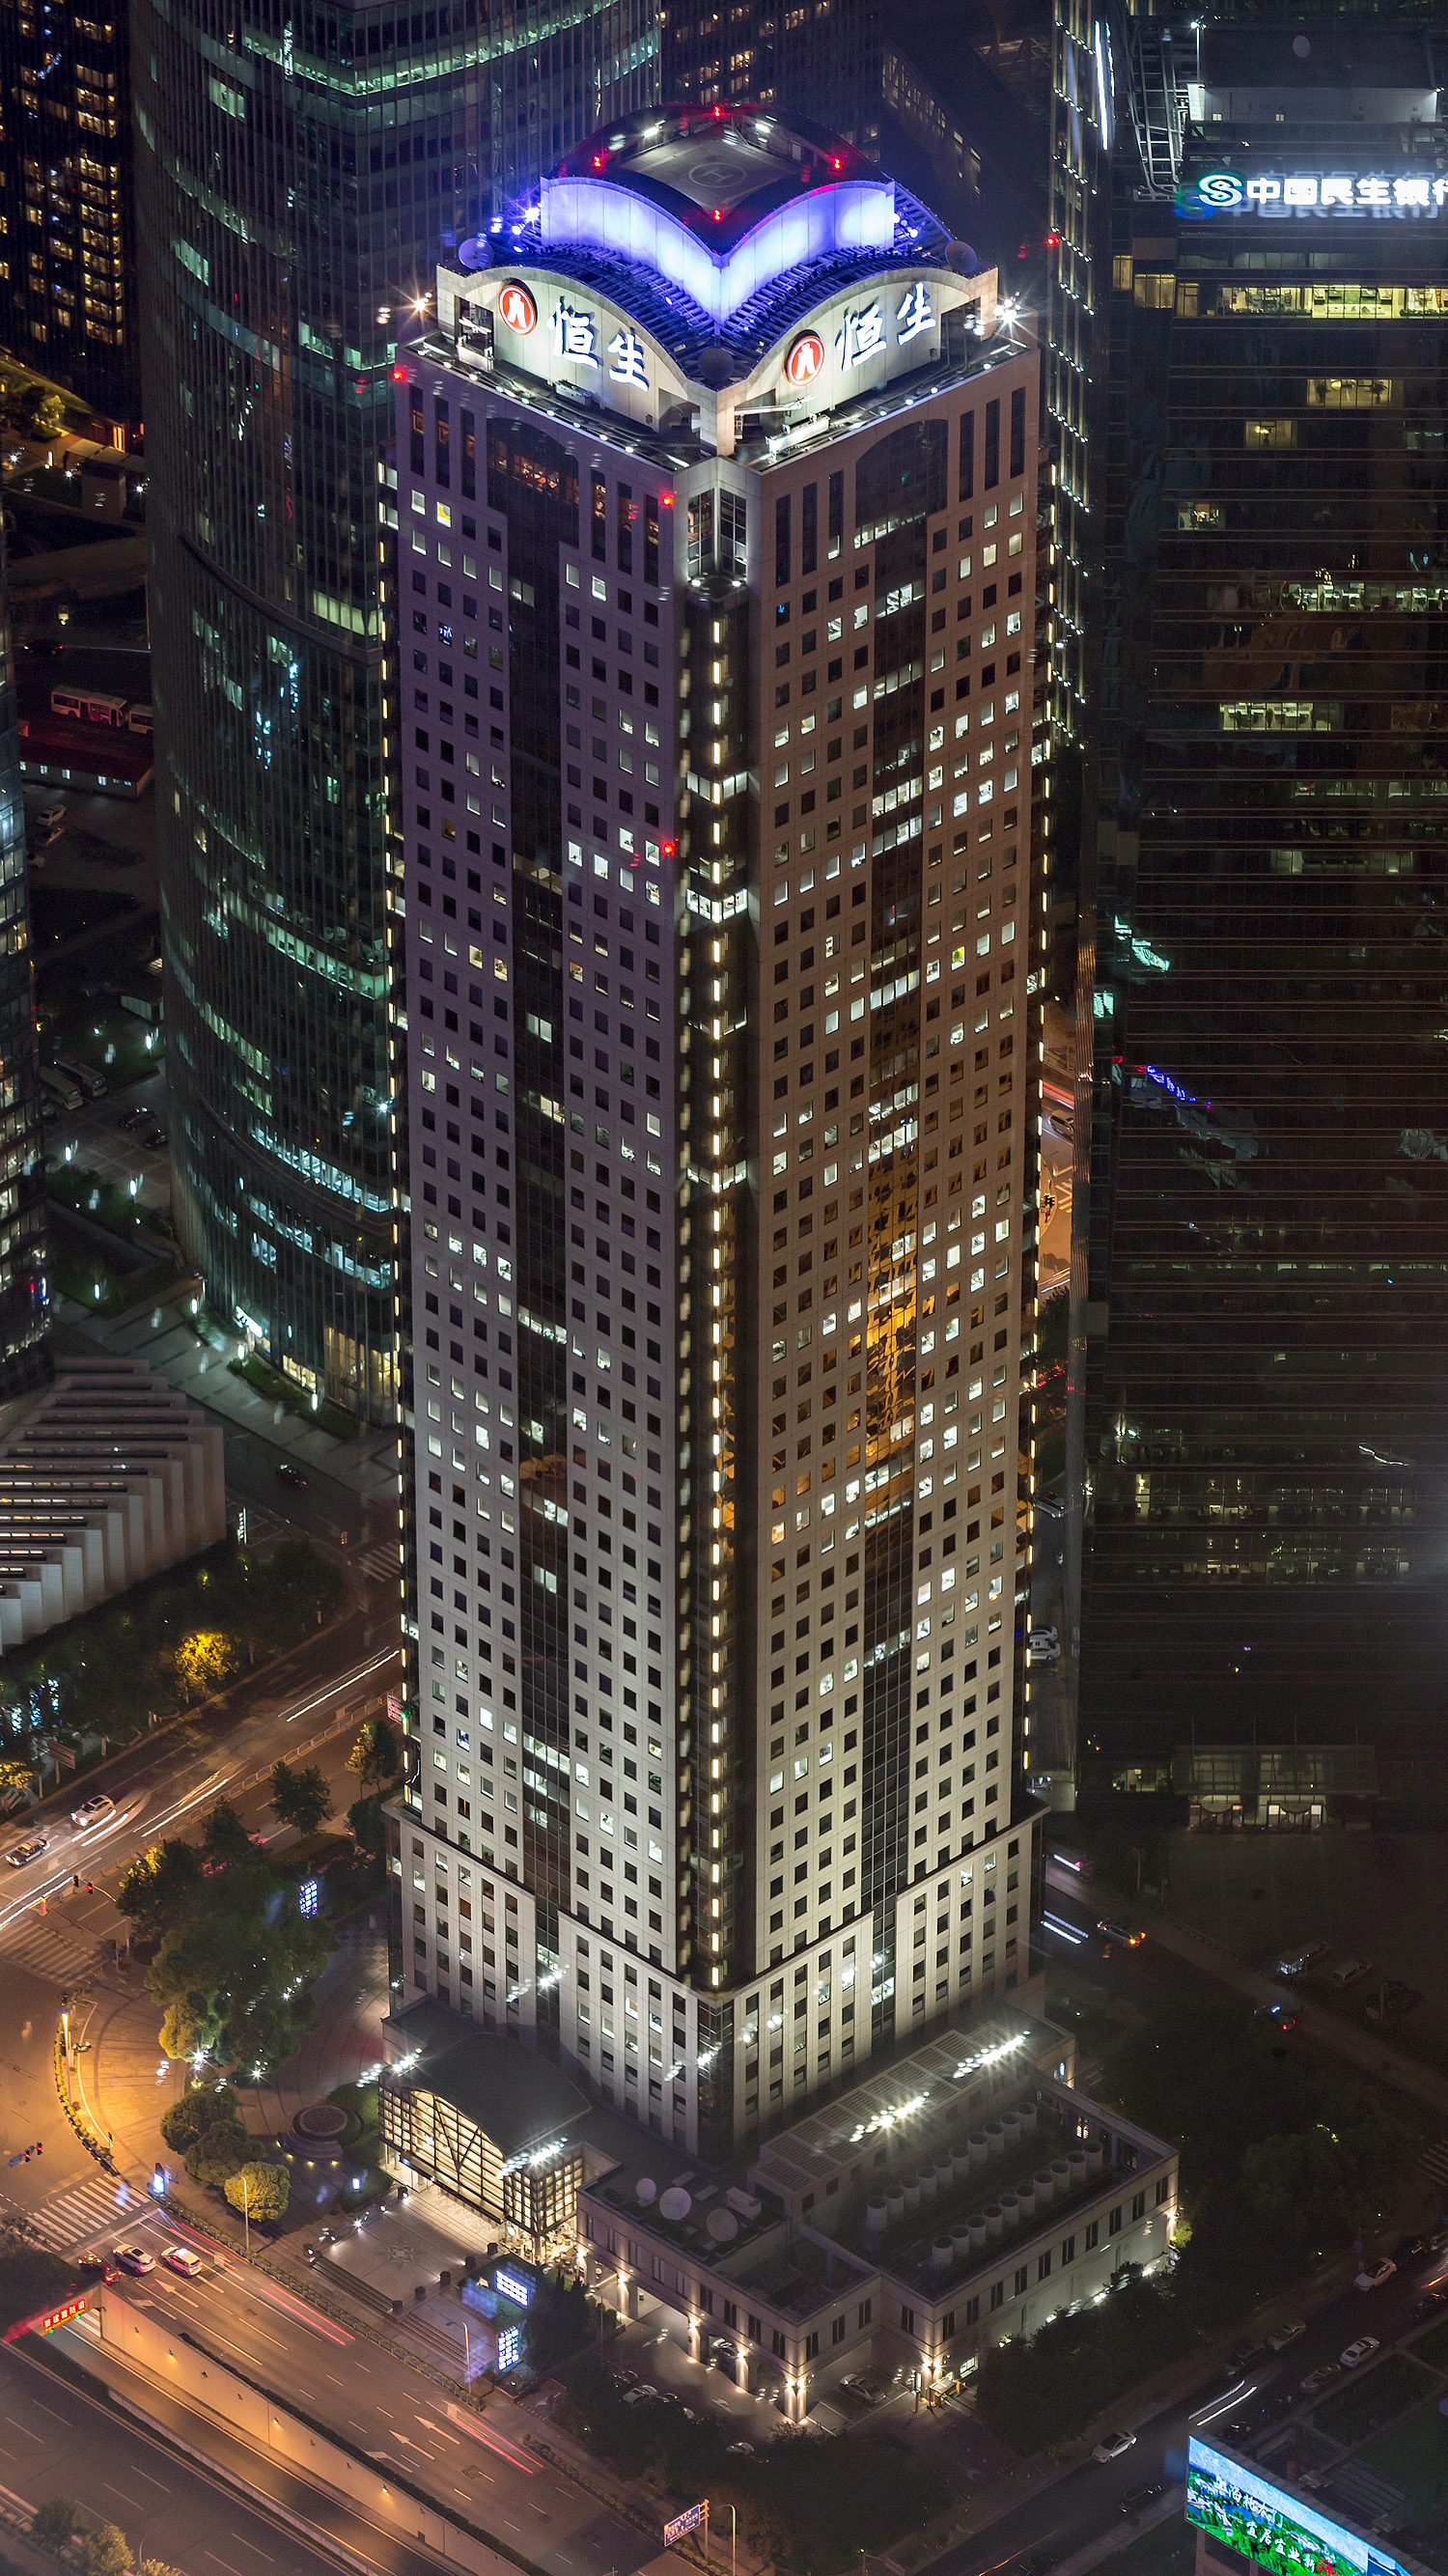 HSBC Tower, Shanghai - View from Shanghai Tower. © Mathias Beinling